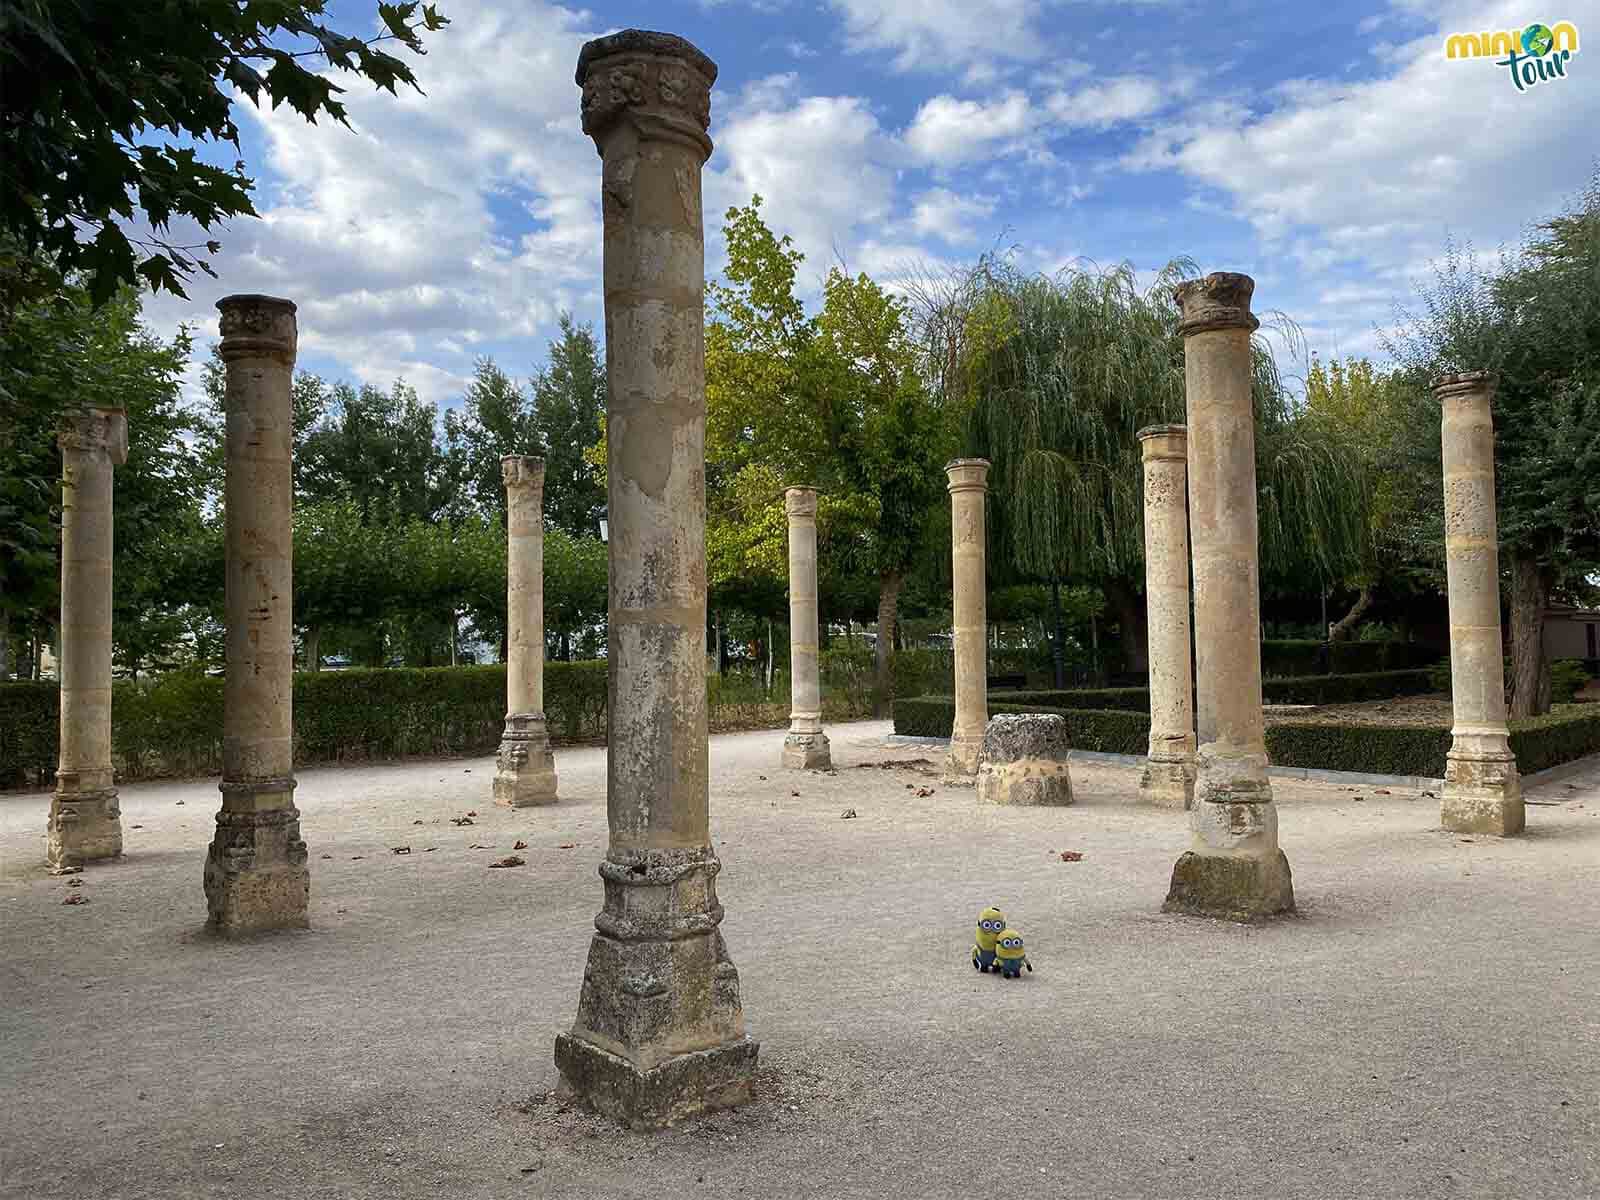 Estas columnas son de lo más curiosas